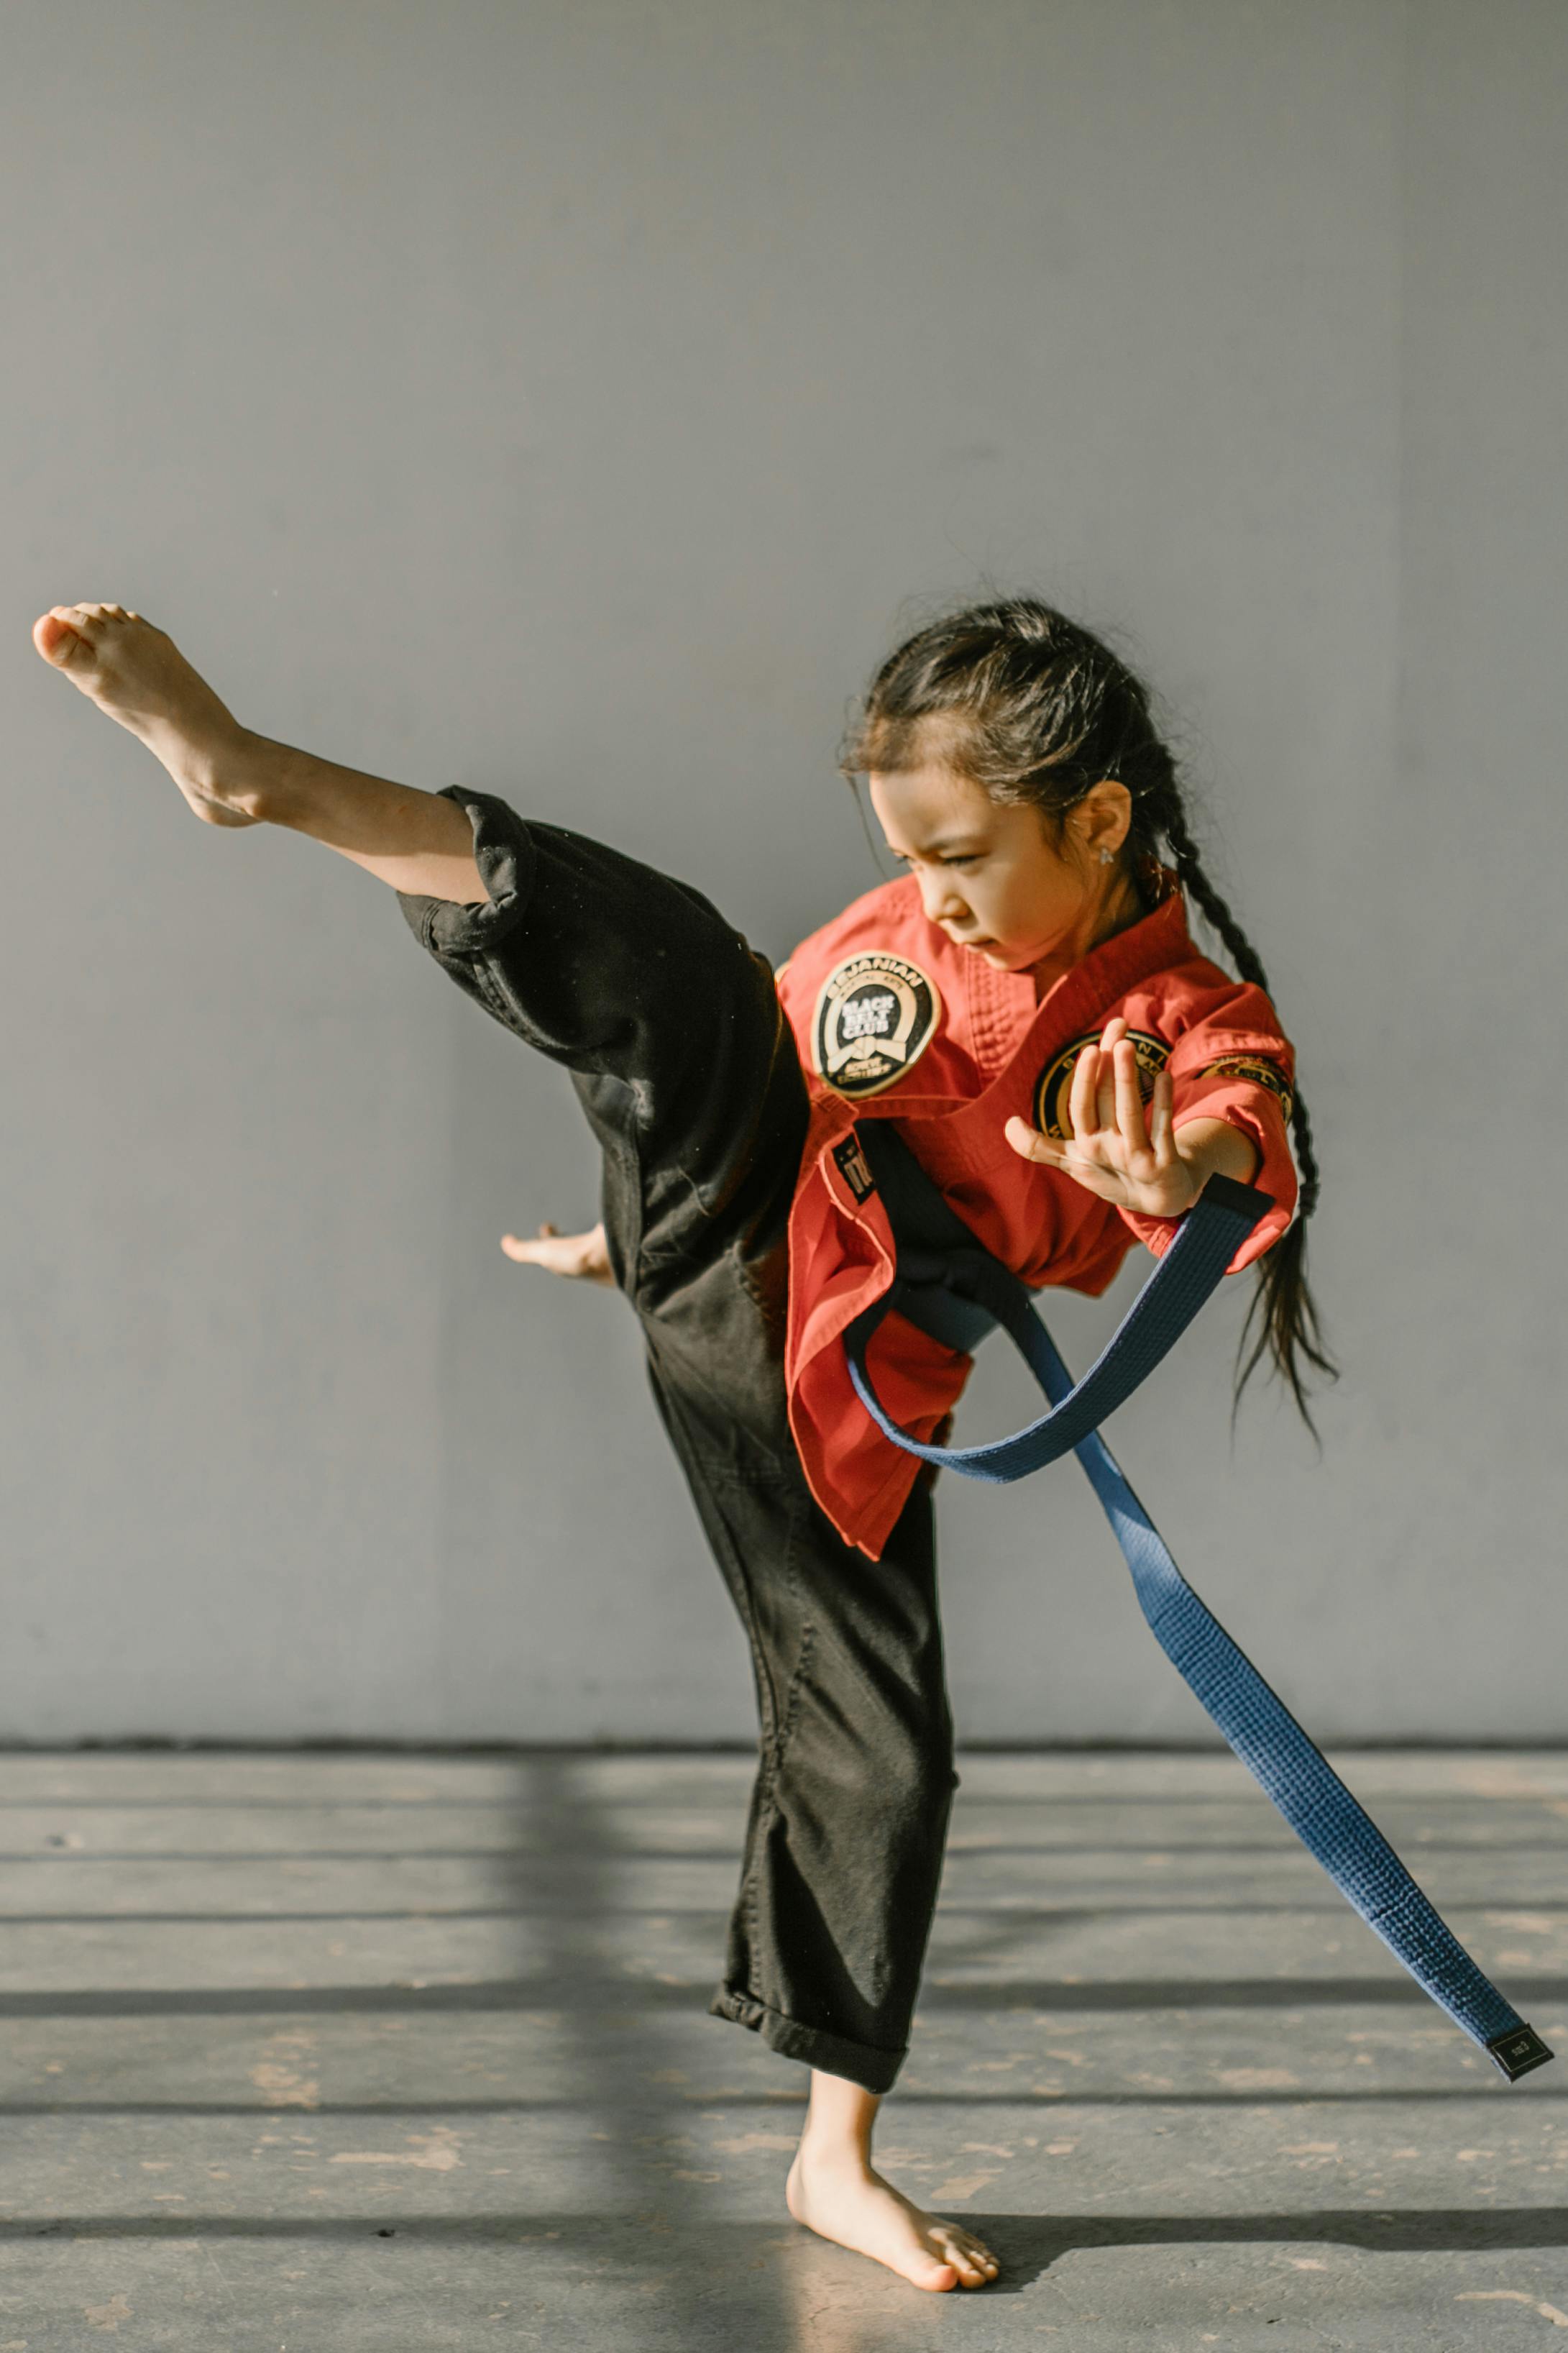 Karate Hình minh họa Sẵn có - Tải xuống Hình ảnh Ngay bây giờ - Karate, Ảnh  nền - Chủ đề, Tự vệ - Chủ đề - iStock